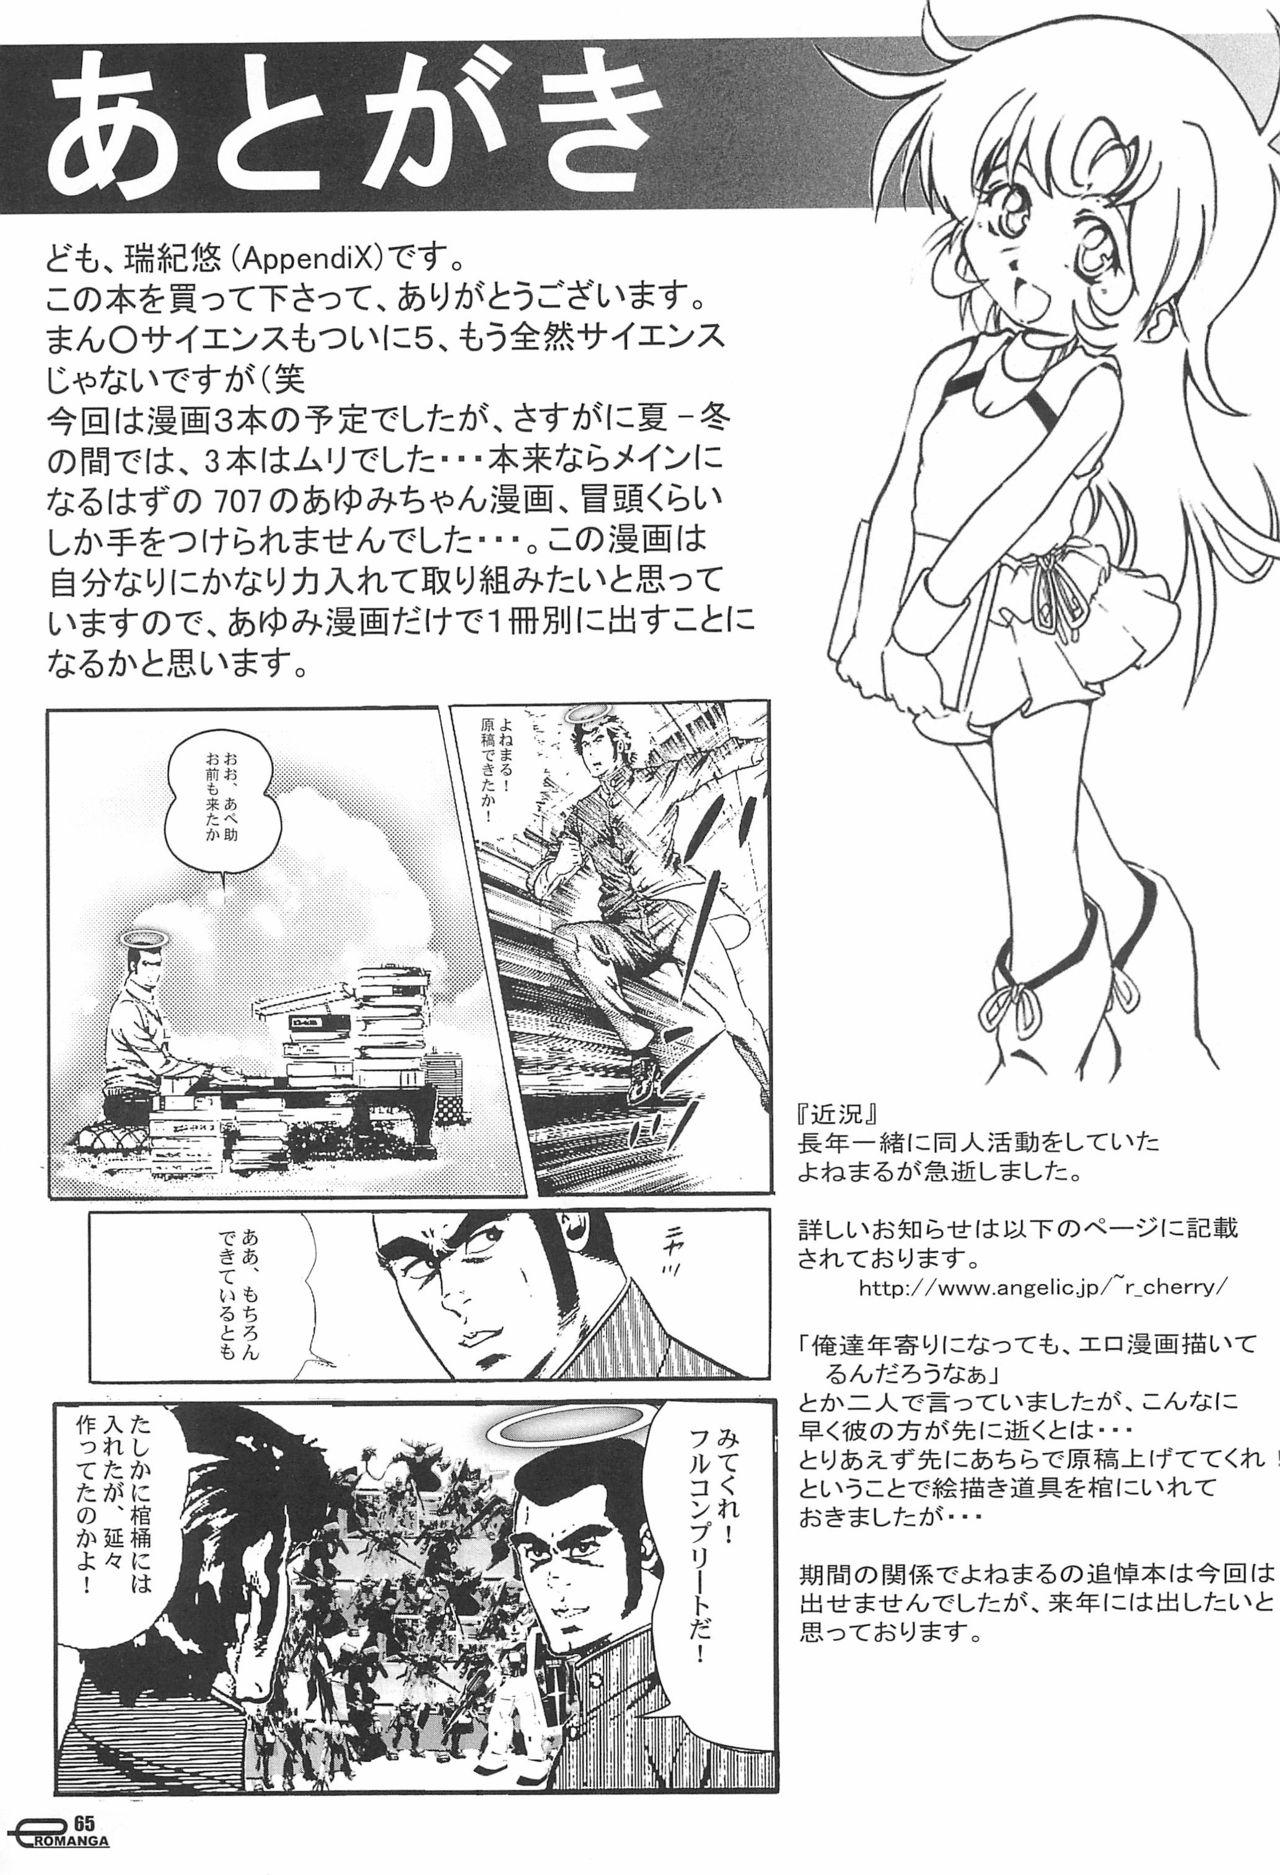 Pain Manga Science 5 - Submarine 707r Manga science Blow Jobs Porn - Page 65